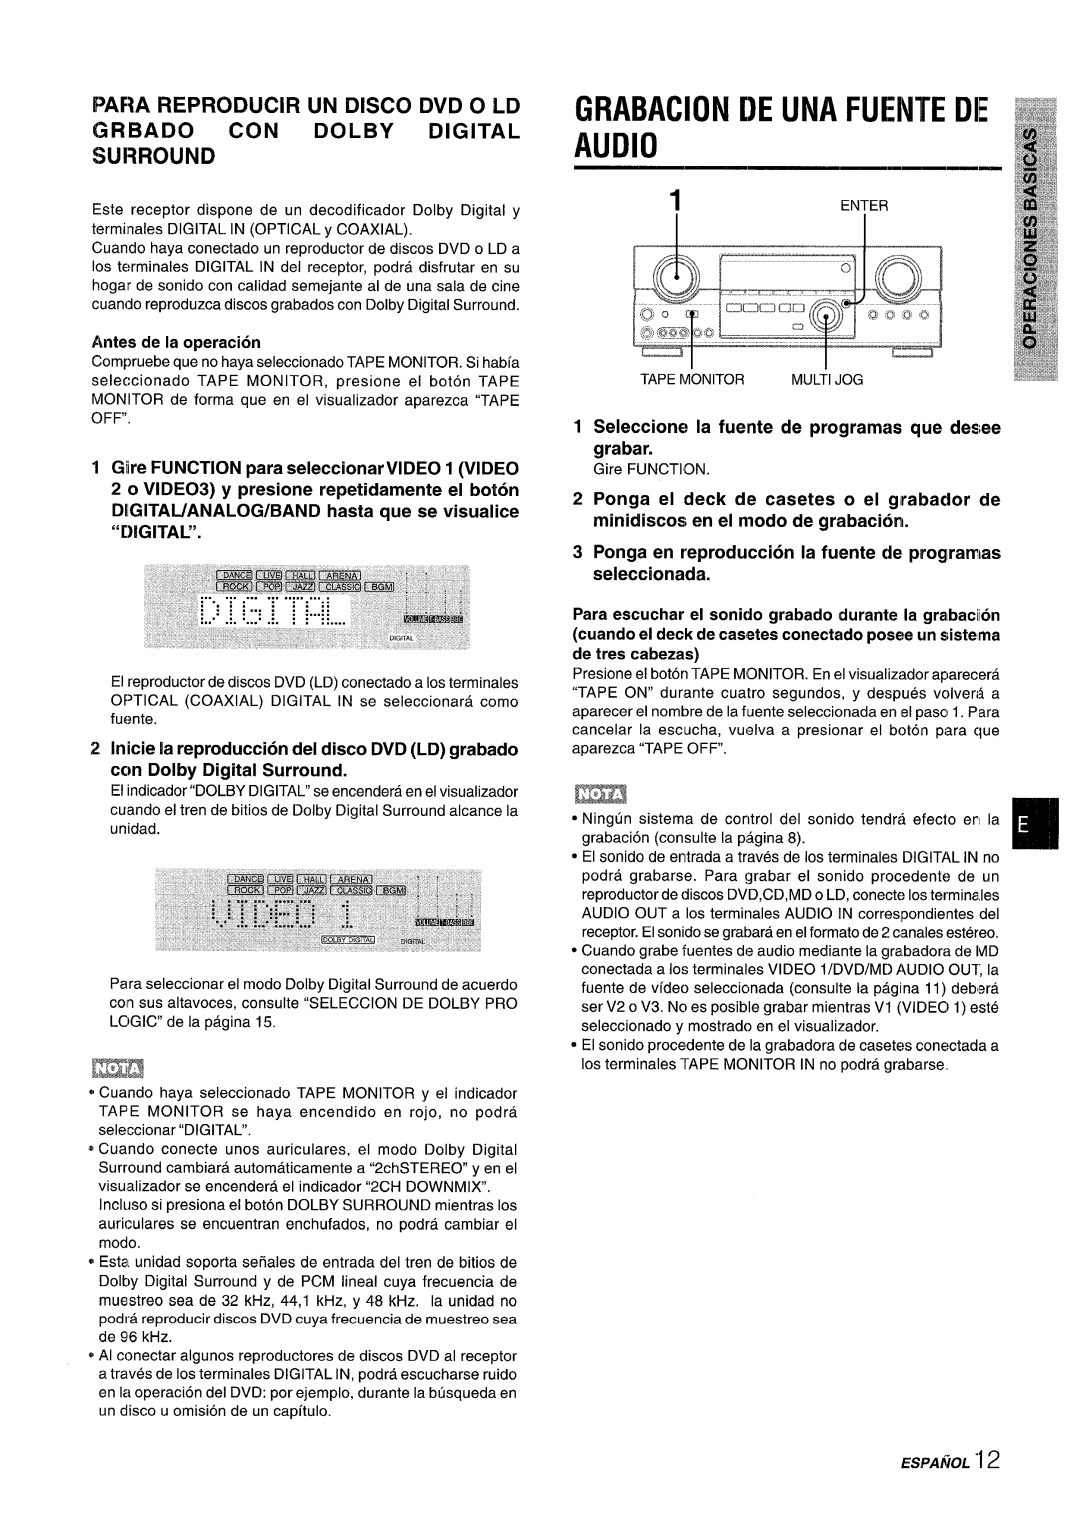 Sony AV-DV75 manual 1”EN” ER, Audio, Grabackin De Una Fuente De, DIGITAL/ANALOG/BAND hasta que se visualice “IGITAL” 